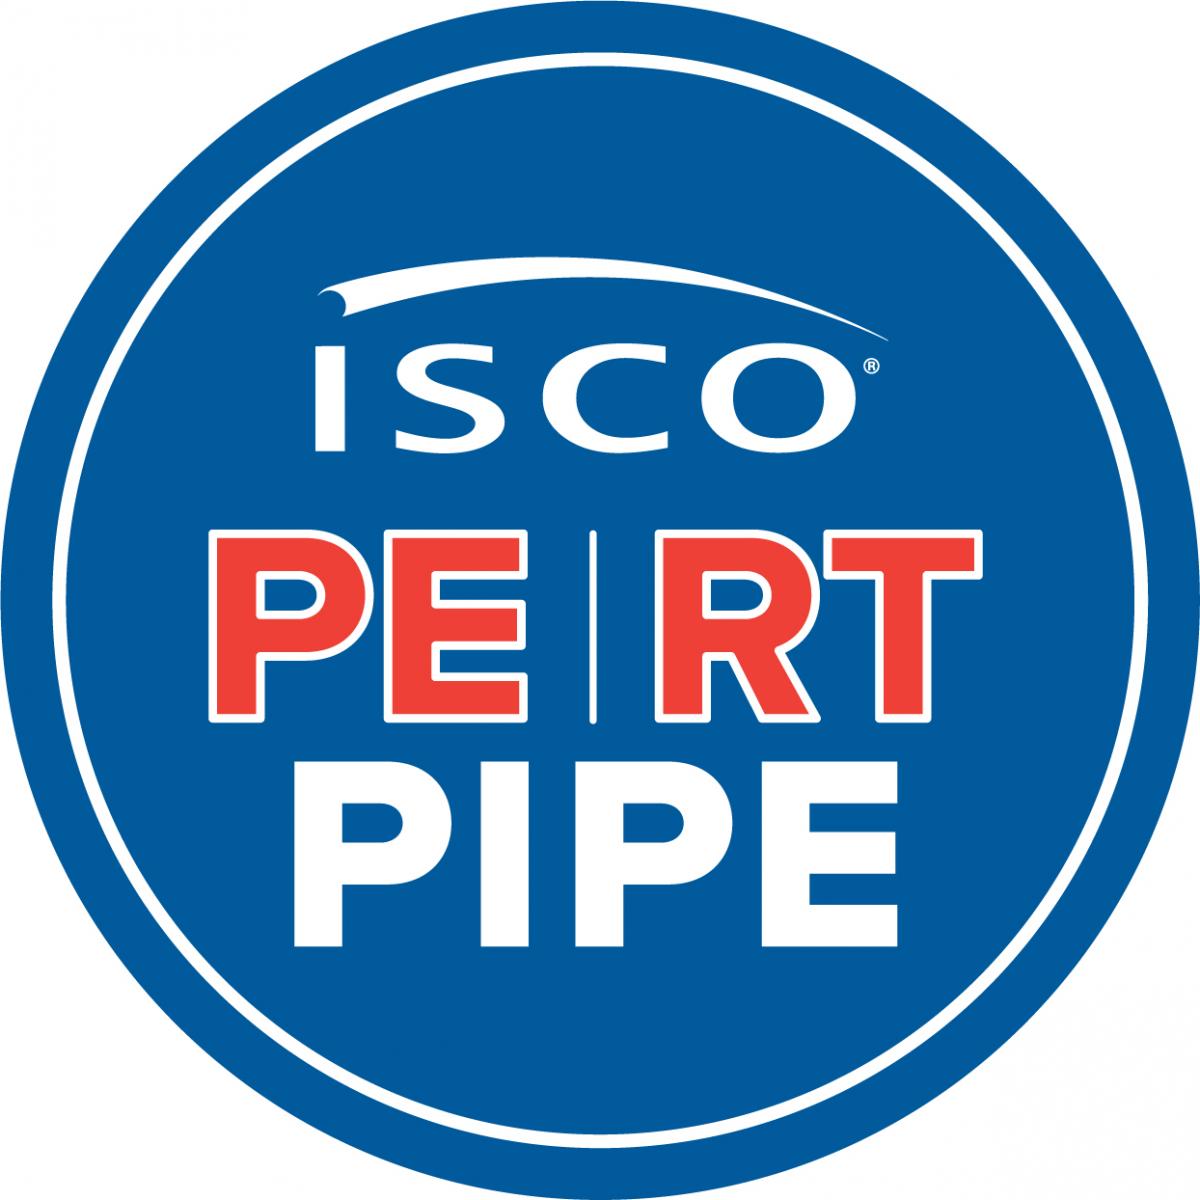 ISCO logo